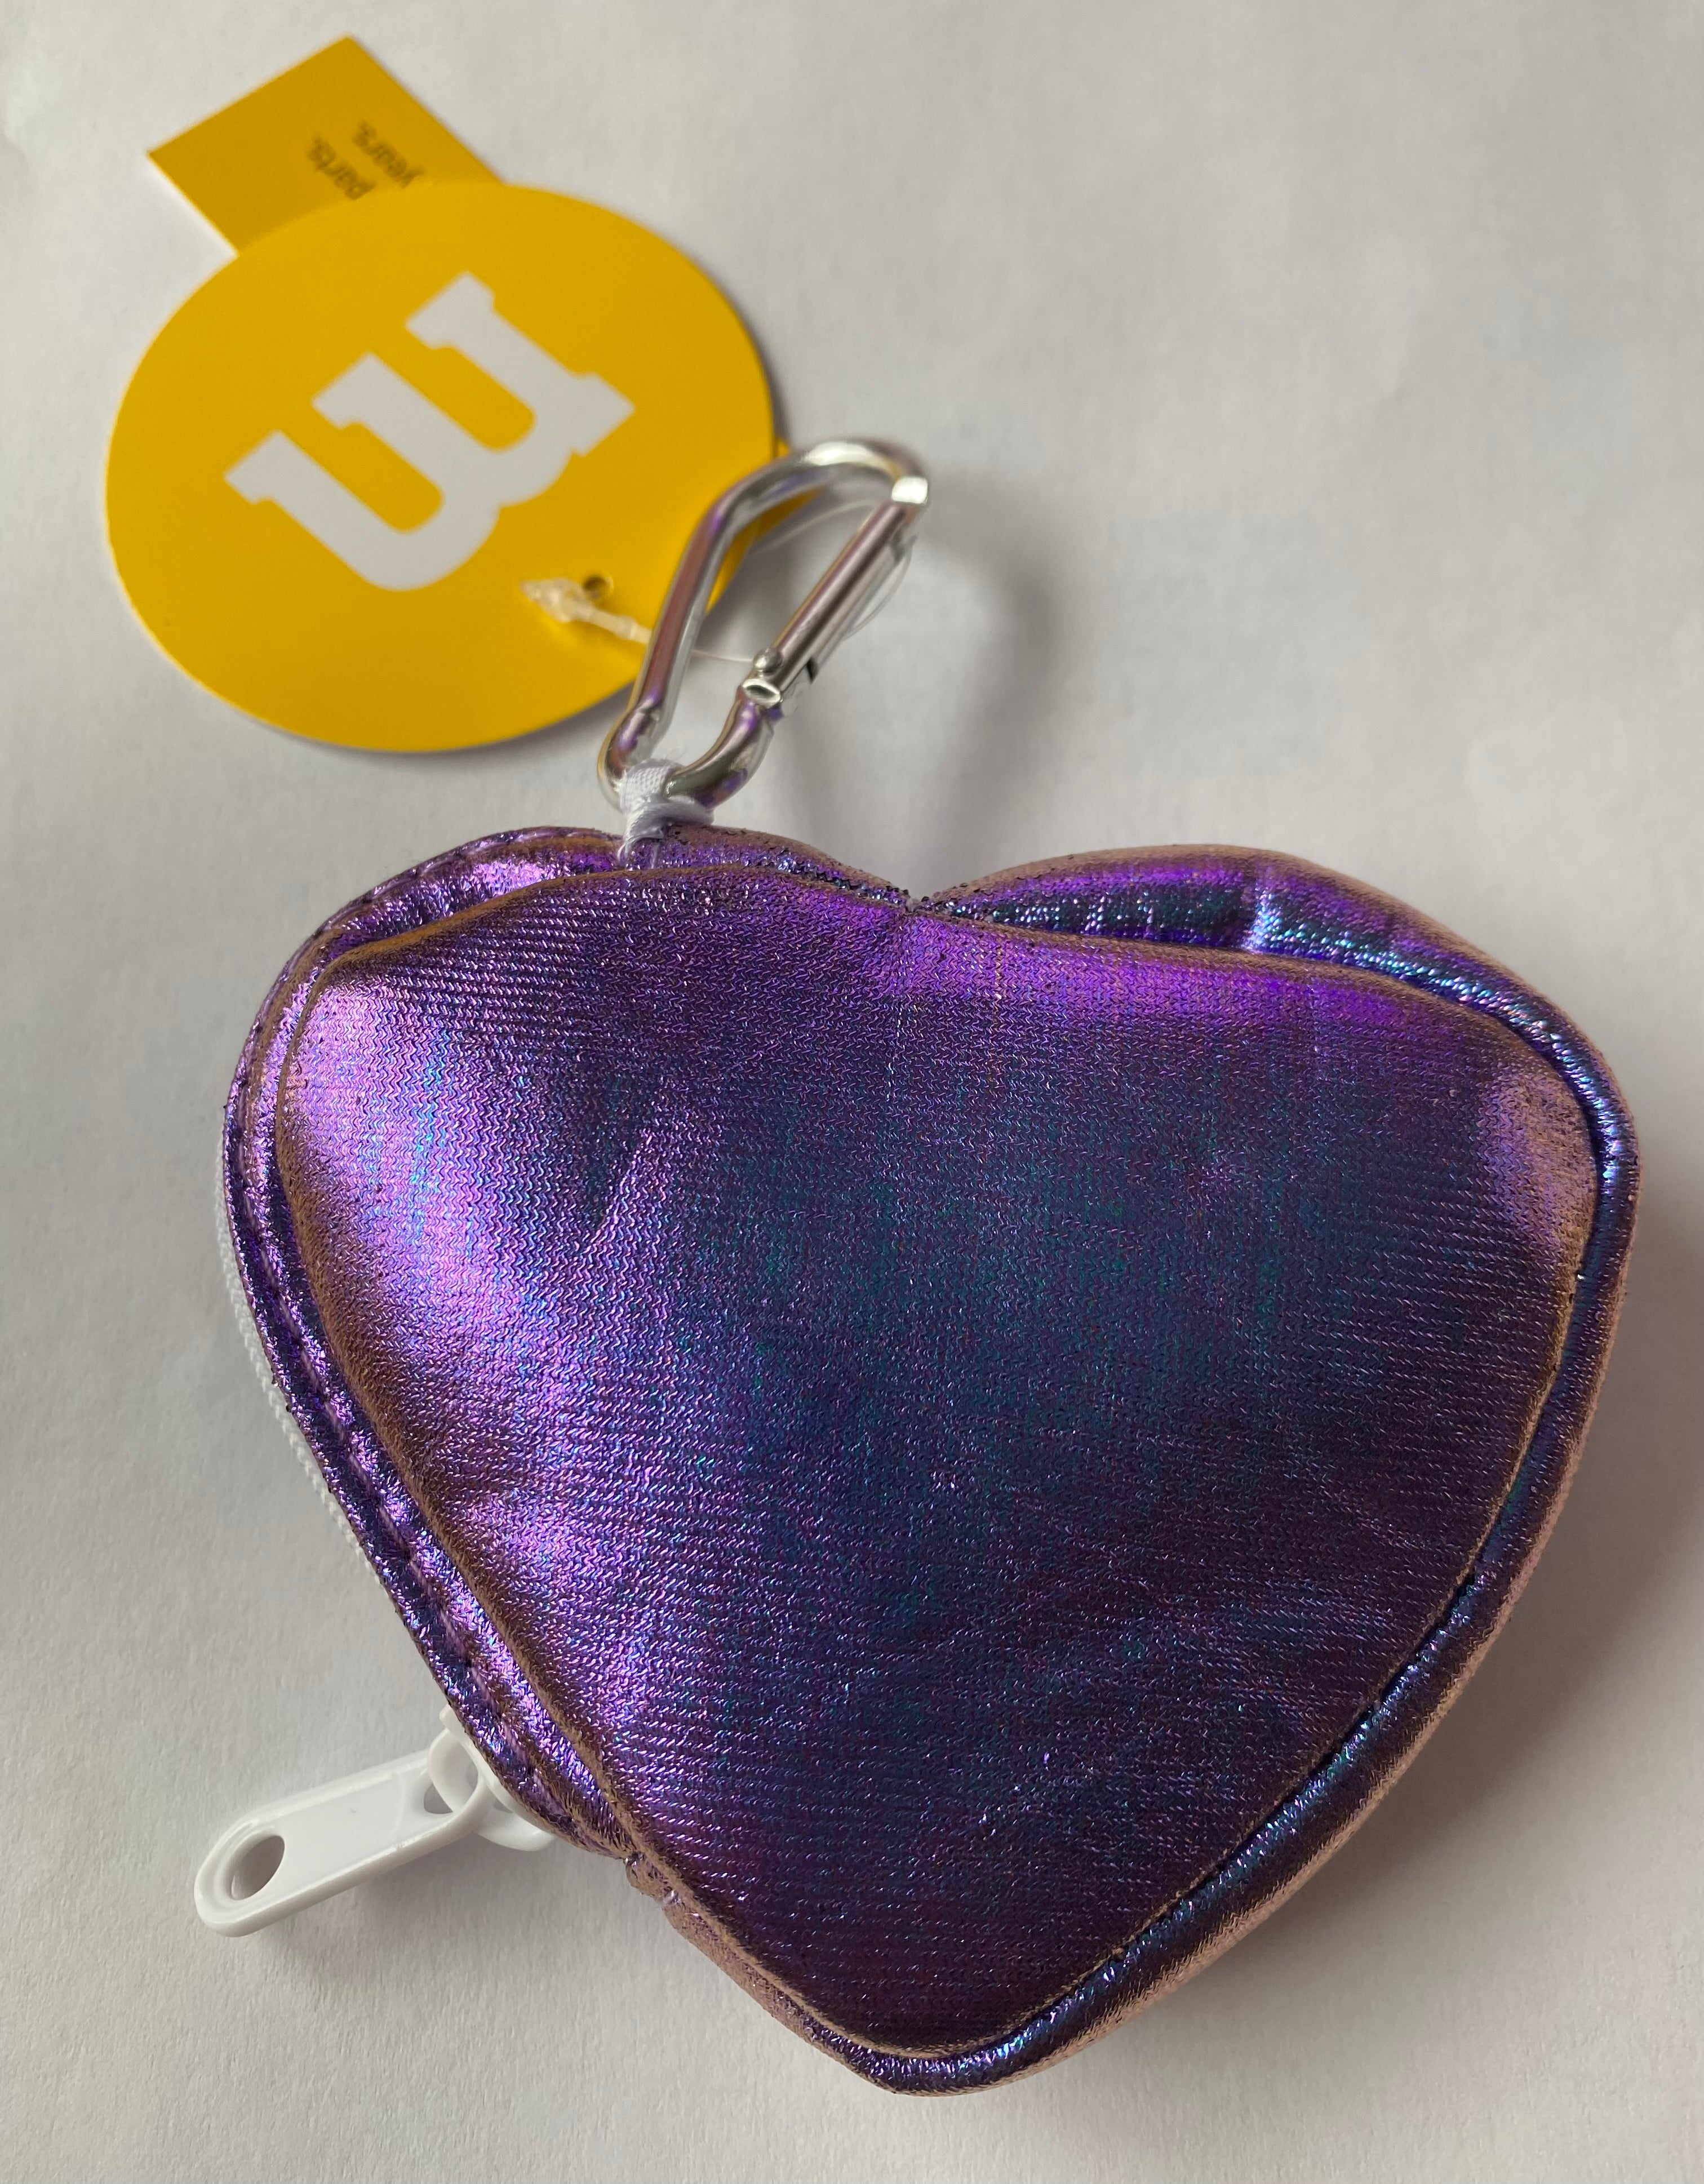 JSGM Heart Shape Cute Coin Purse - Small Keychain Coin Pouch, Can Put Key  Chain Coins Bills Jewelry …See more JSGM Heart Shape Cute Coin Purse -  Small